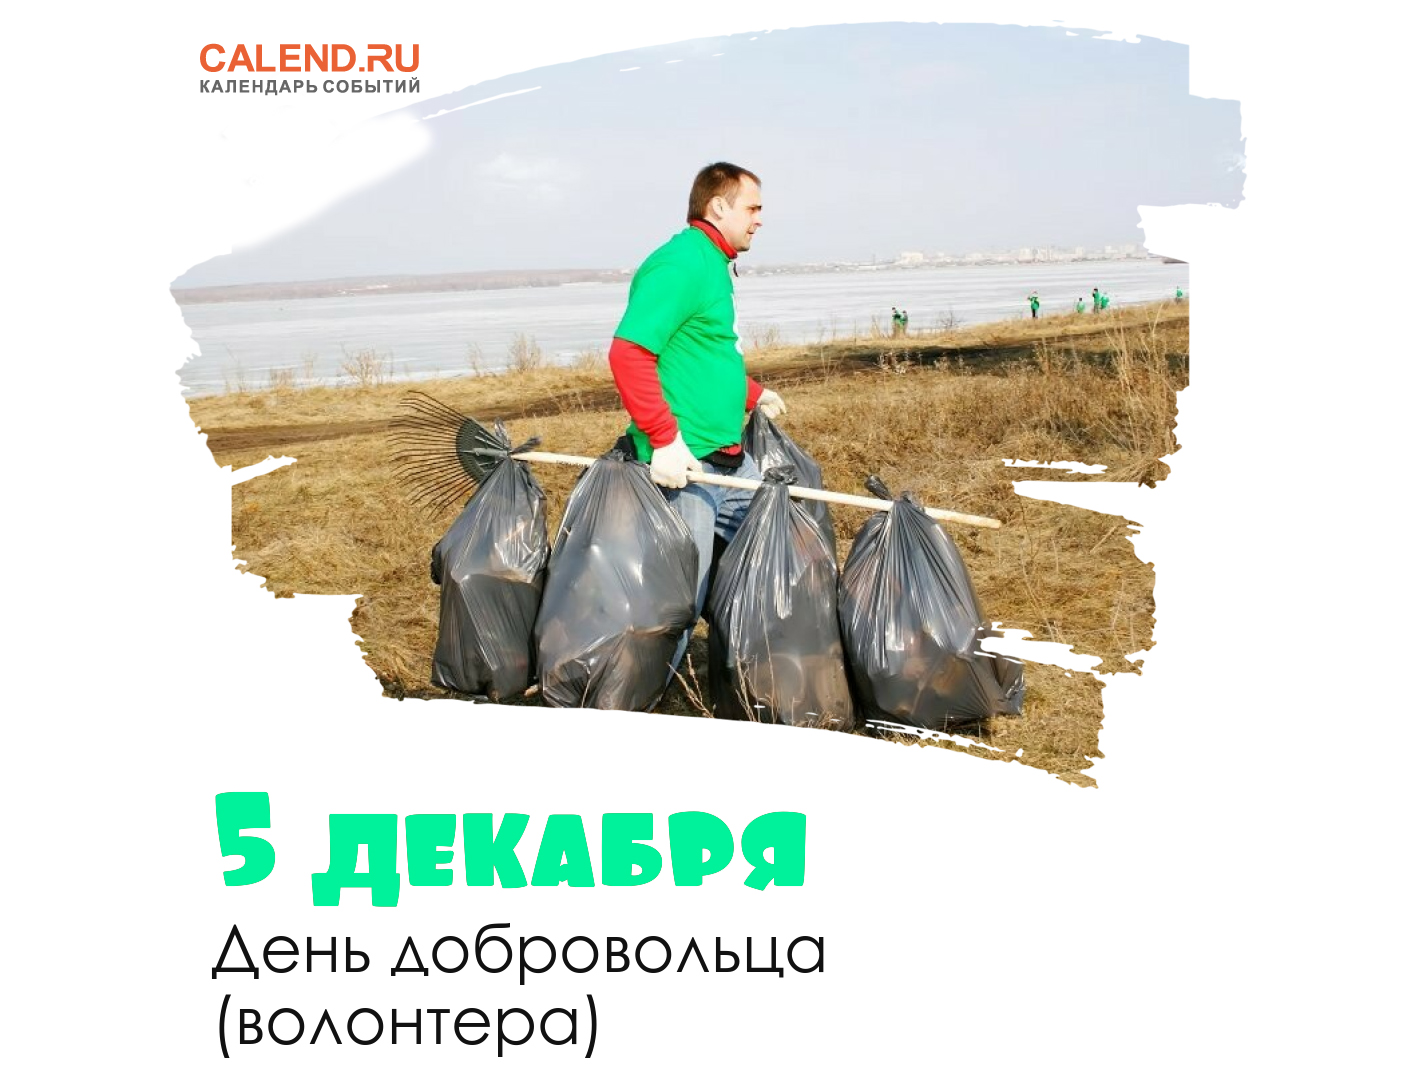 5 декабря — День добровольца (волонтера) в России / Открытка дня / Журнал  Calend.ru